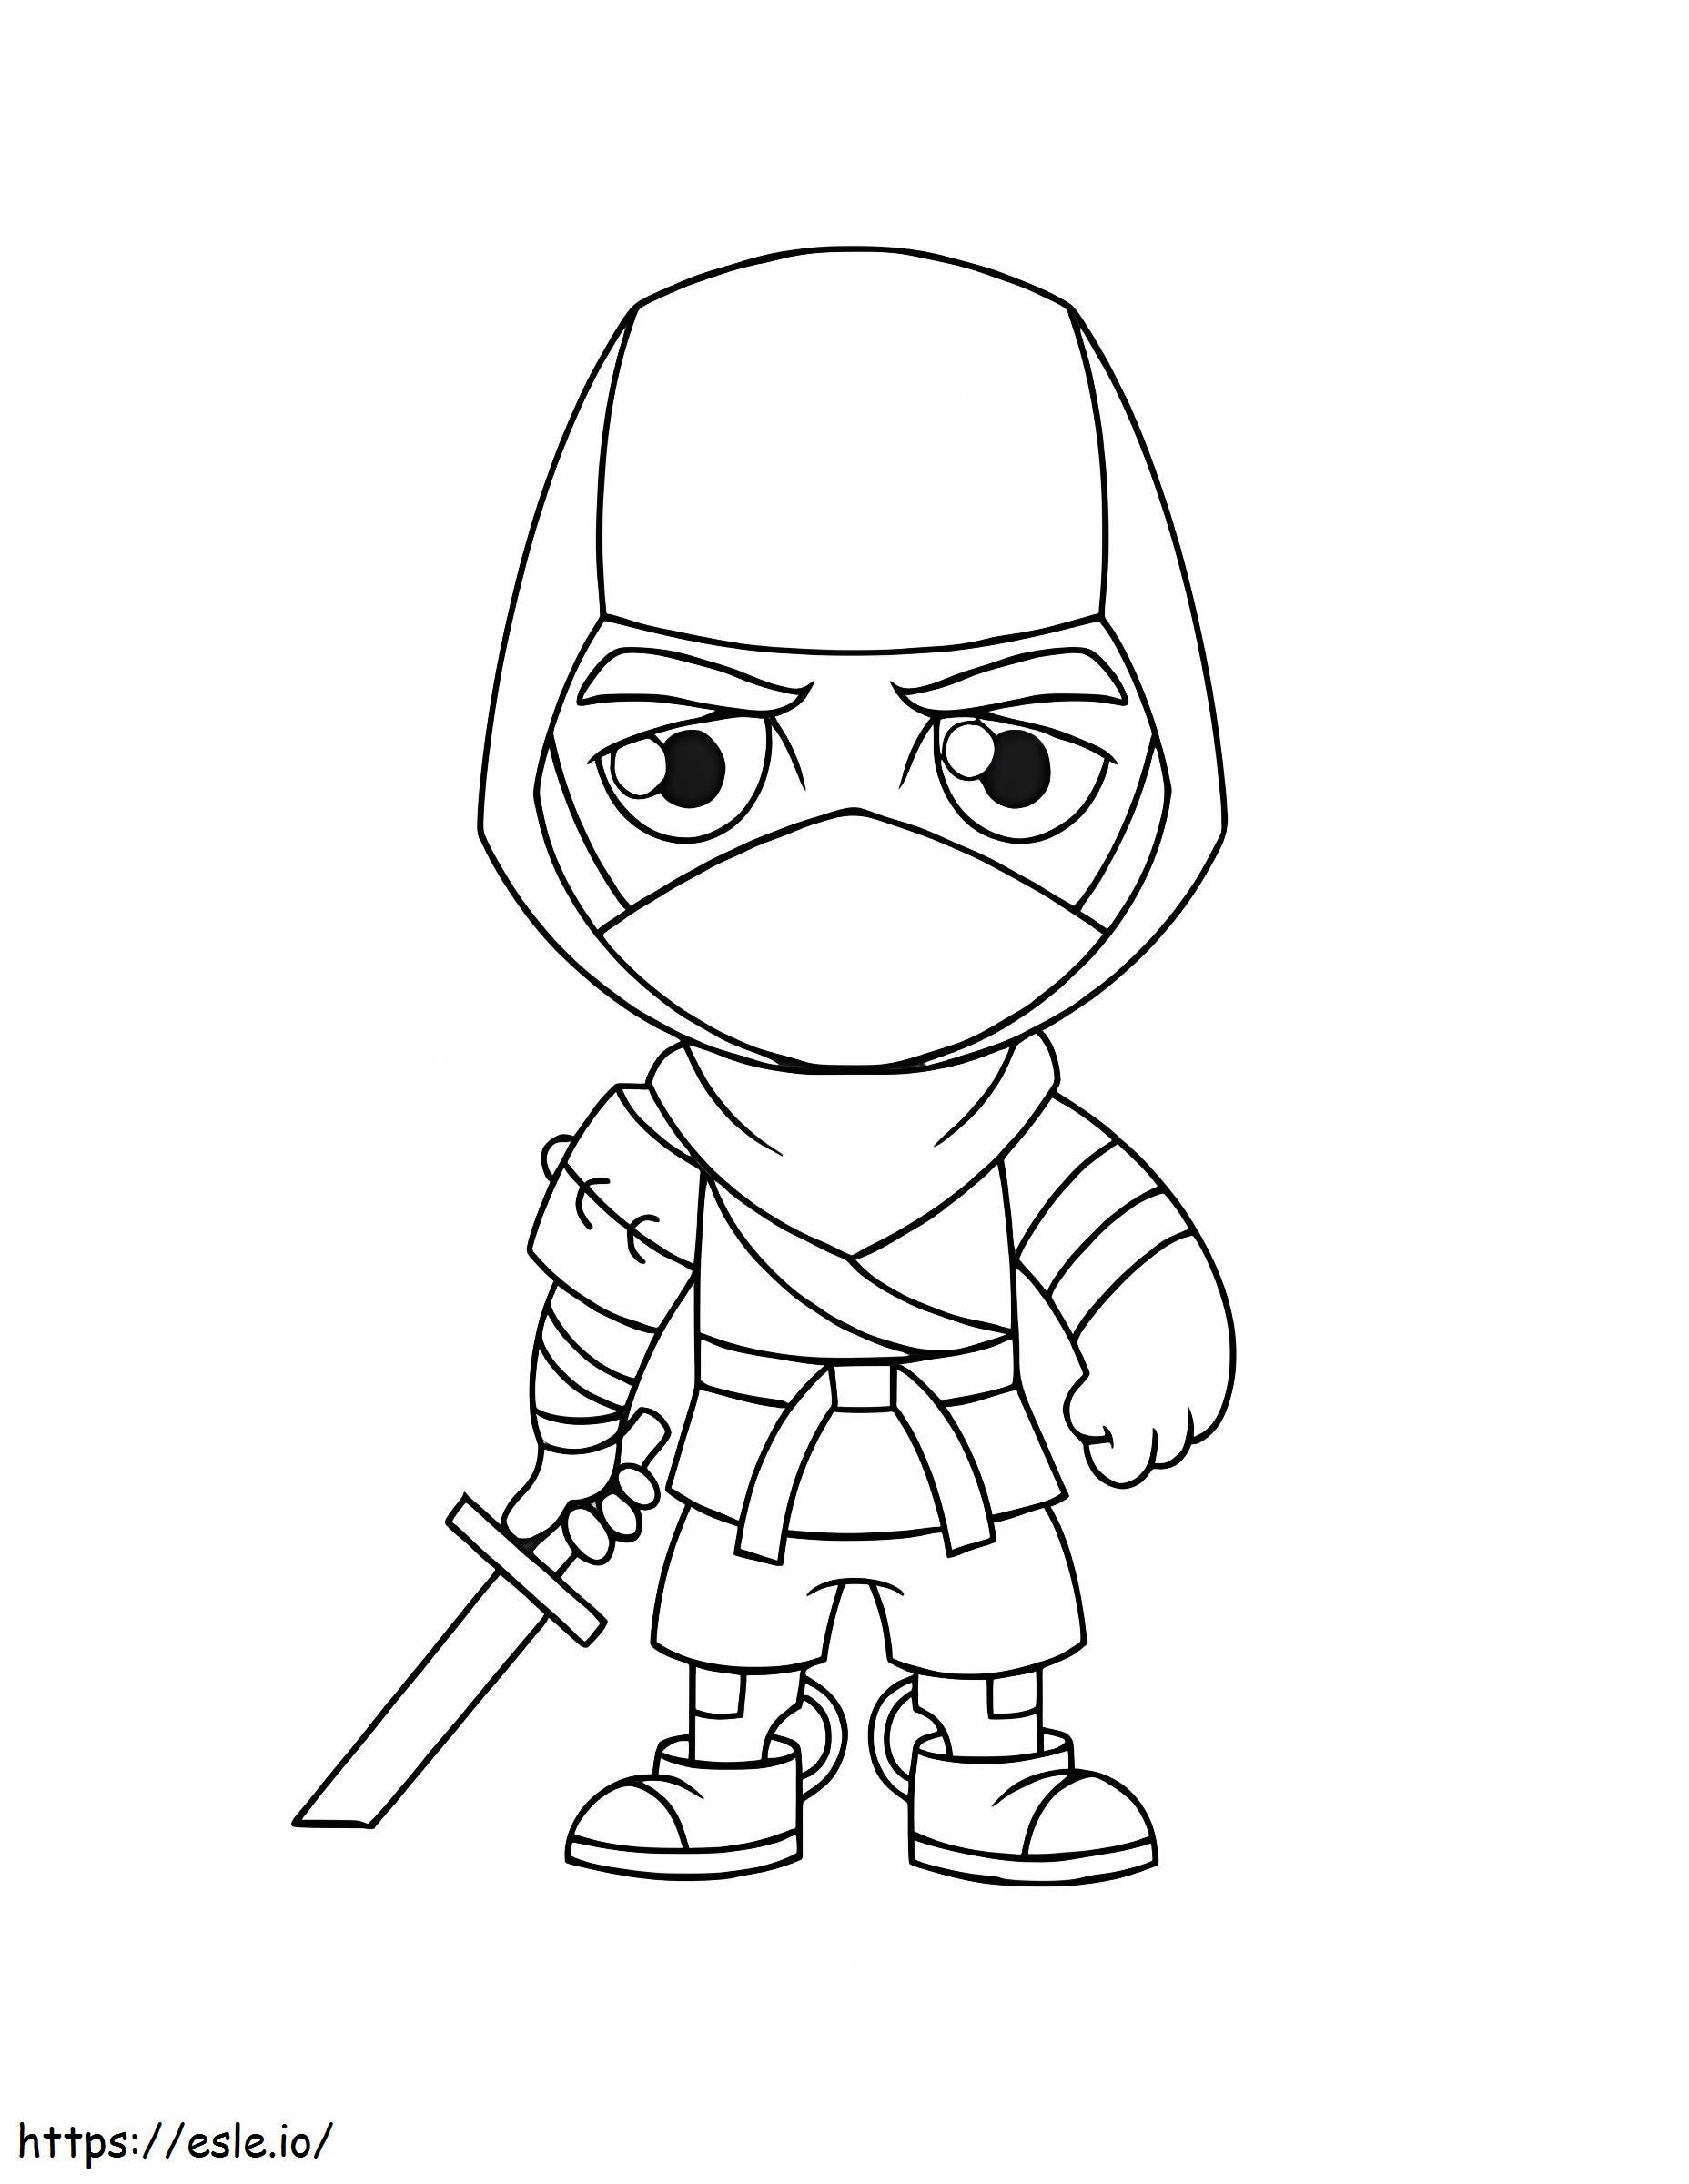 Fortnite Ninja coloring page